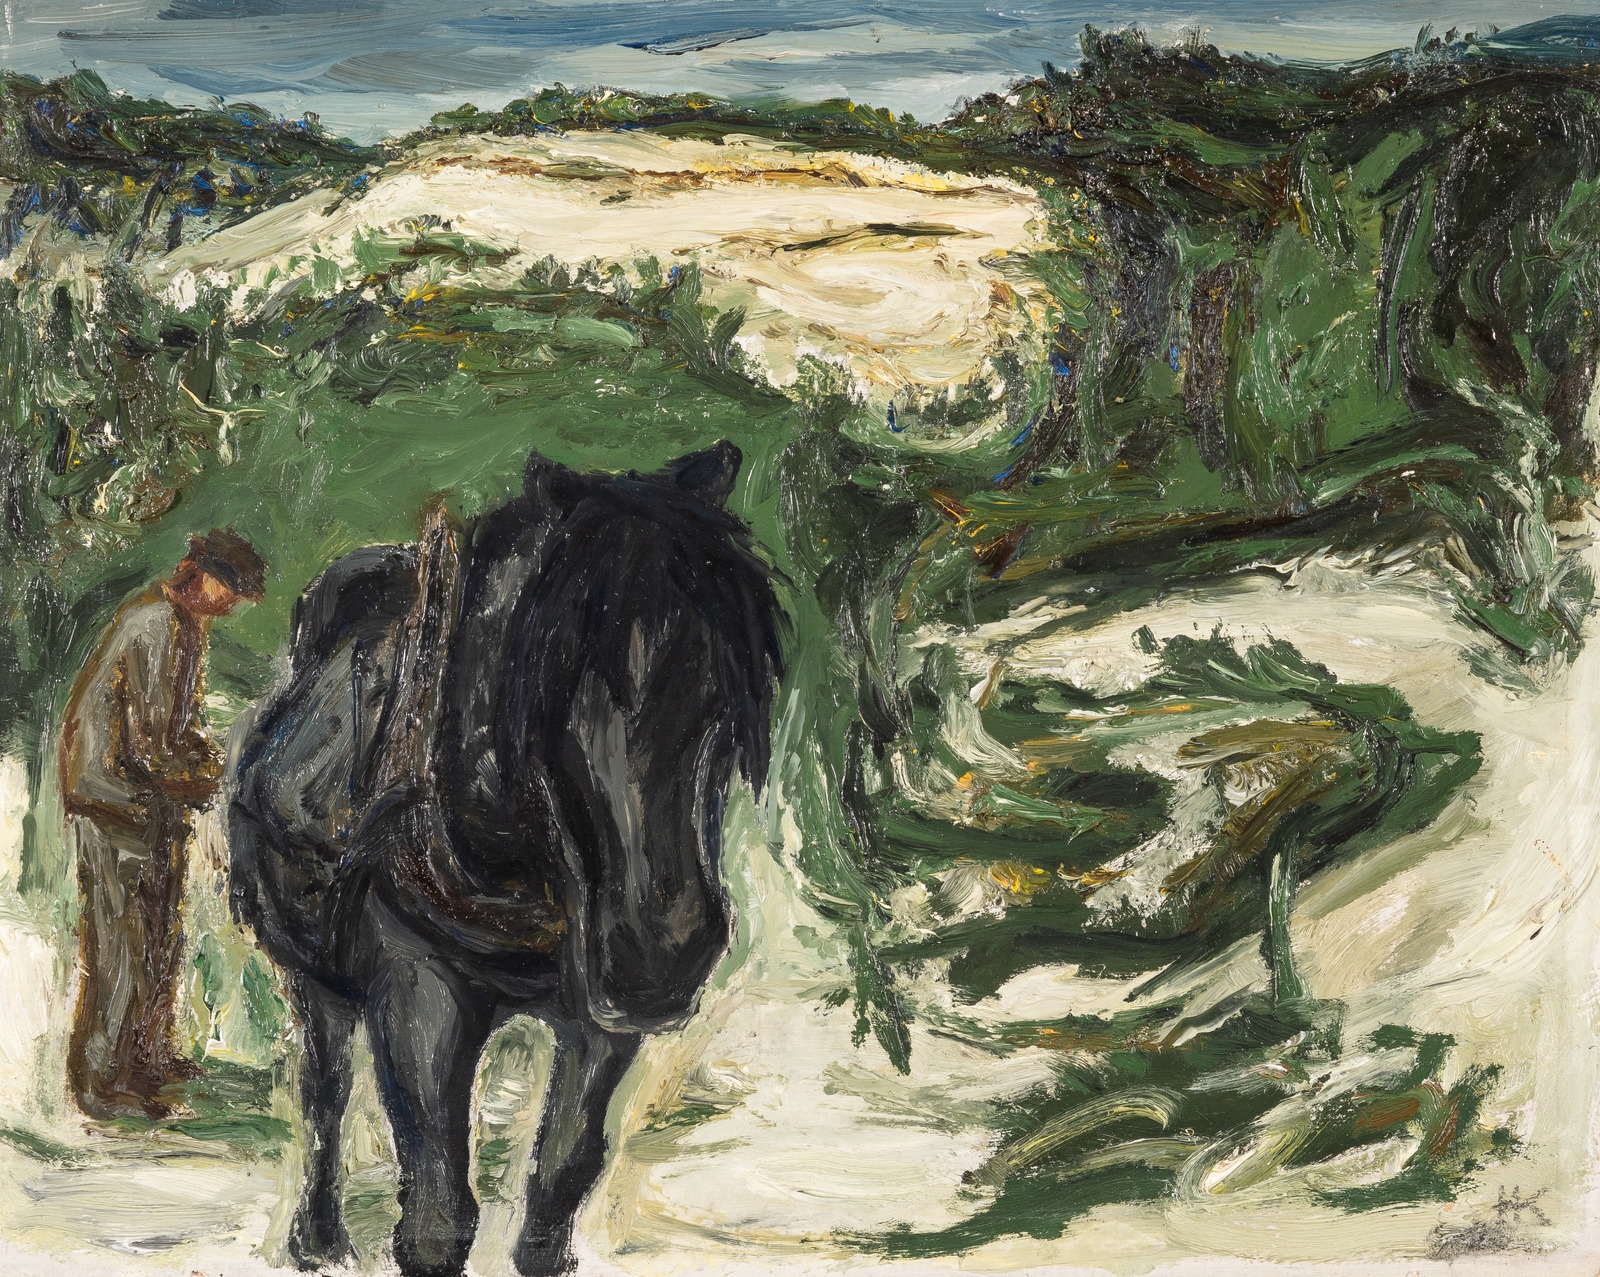 Mann med hest, vårvinter Hakadal by Harald Kihle, 1953